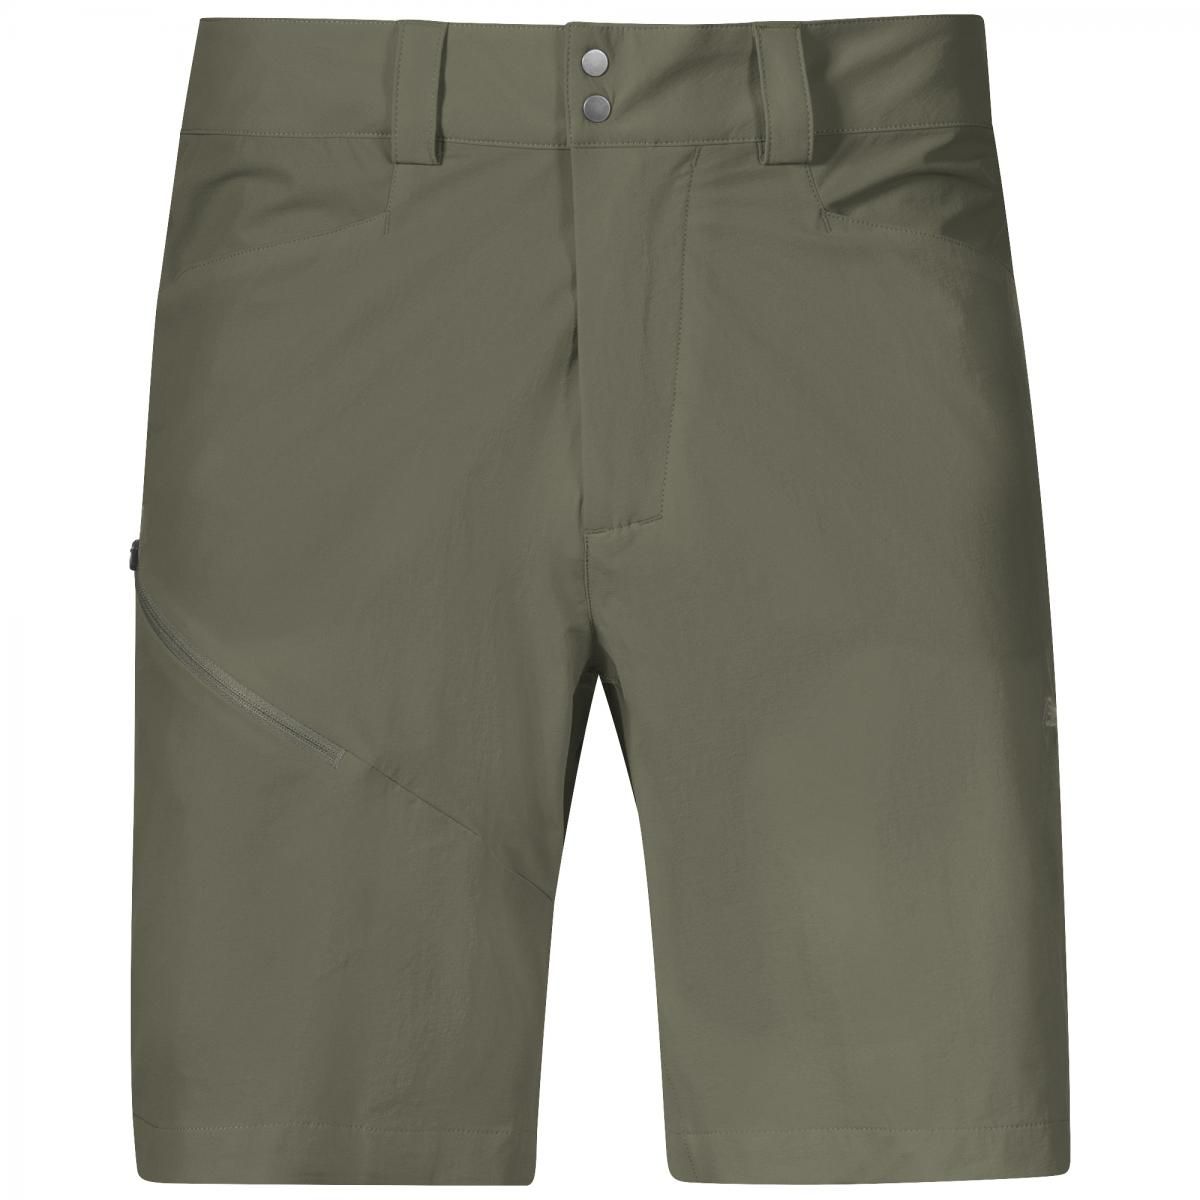 bergans_vandre_softshell_shorts_green_mud